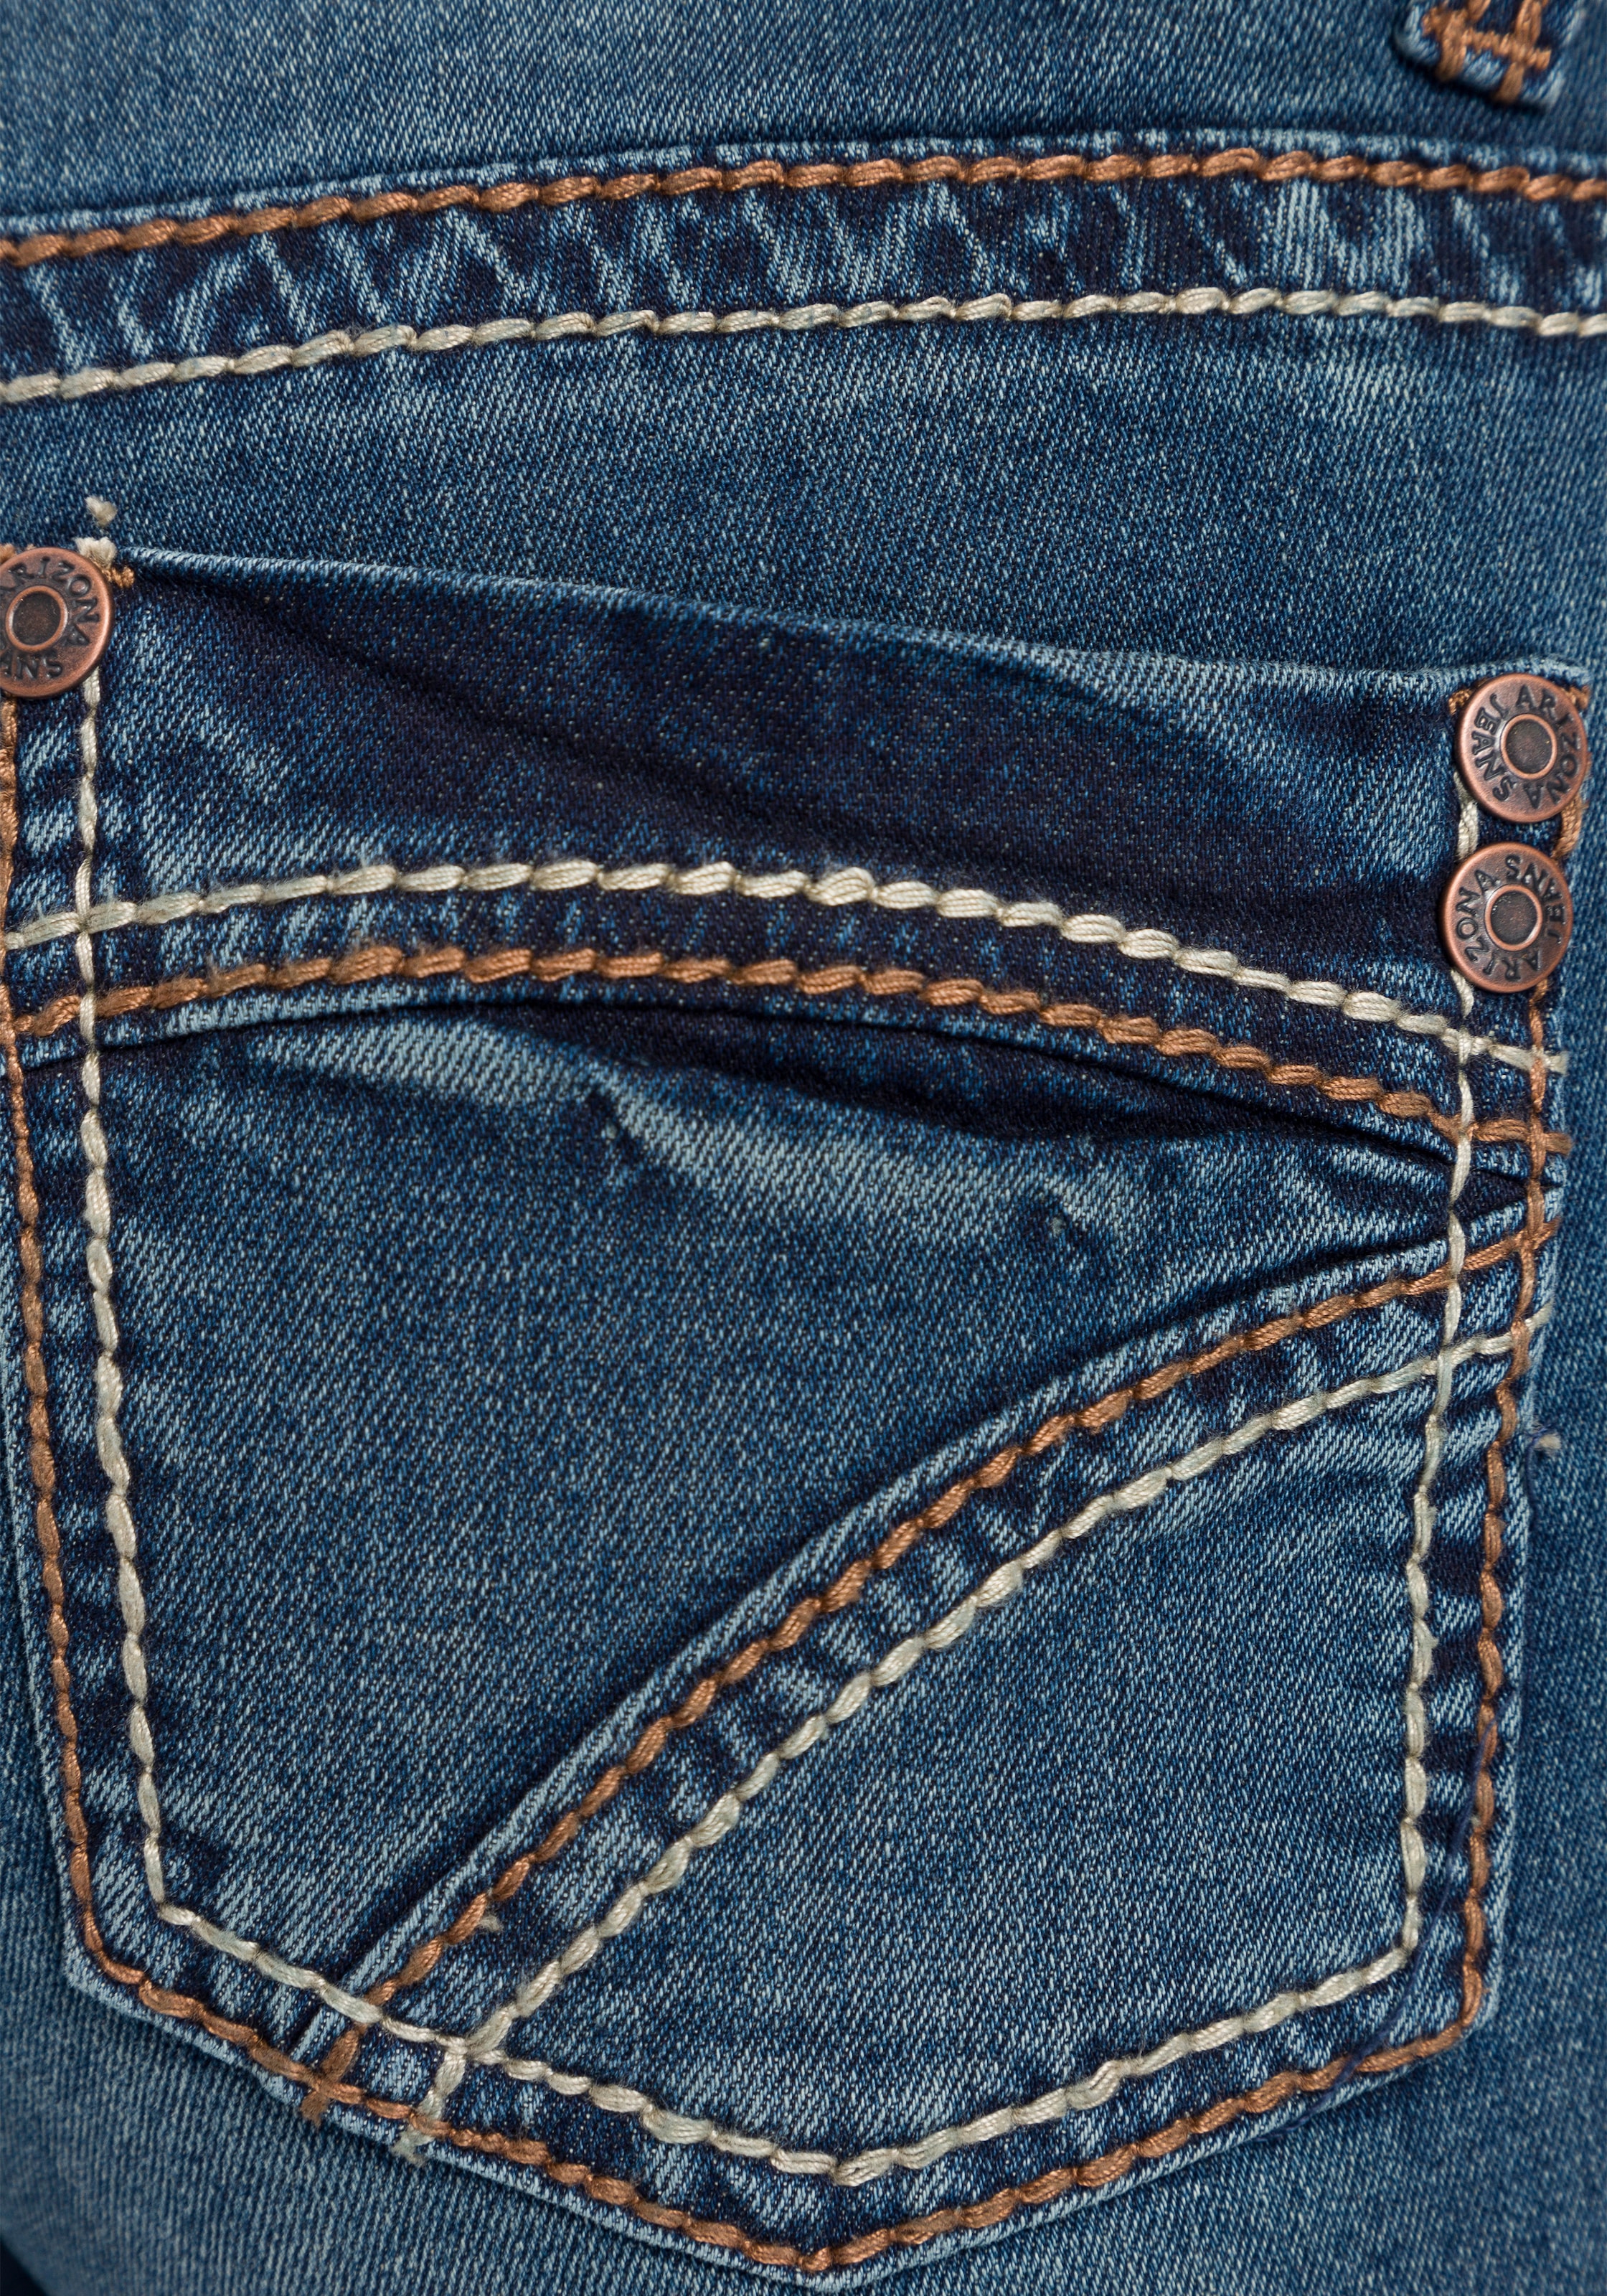 Arizona Gerade Jeans »Kontrastnähte«, Mid Waist kaufen online bei OTTO